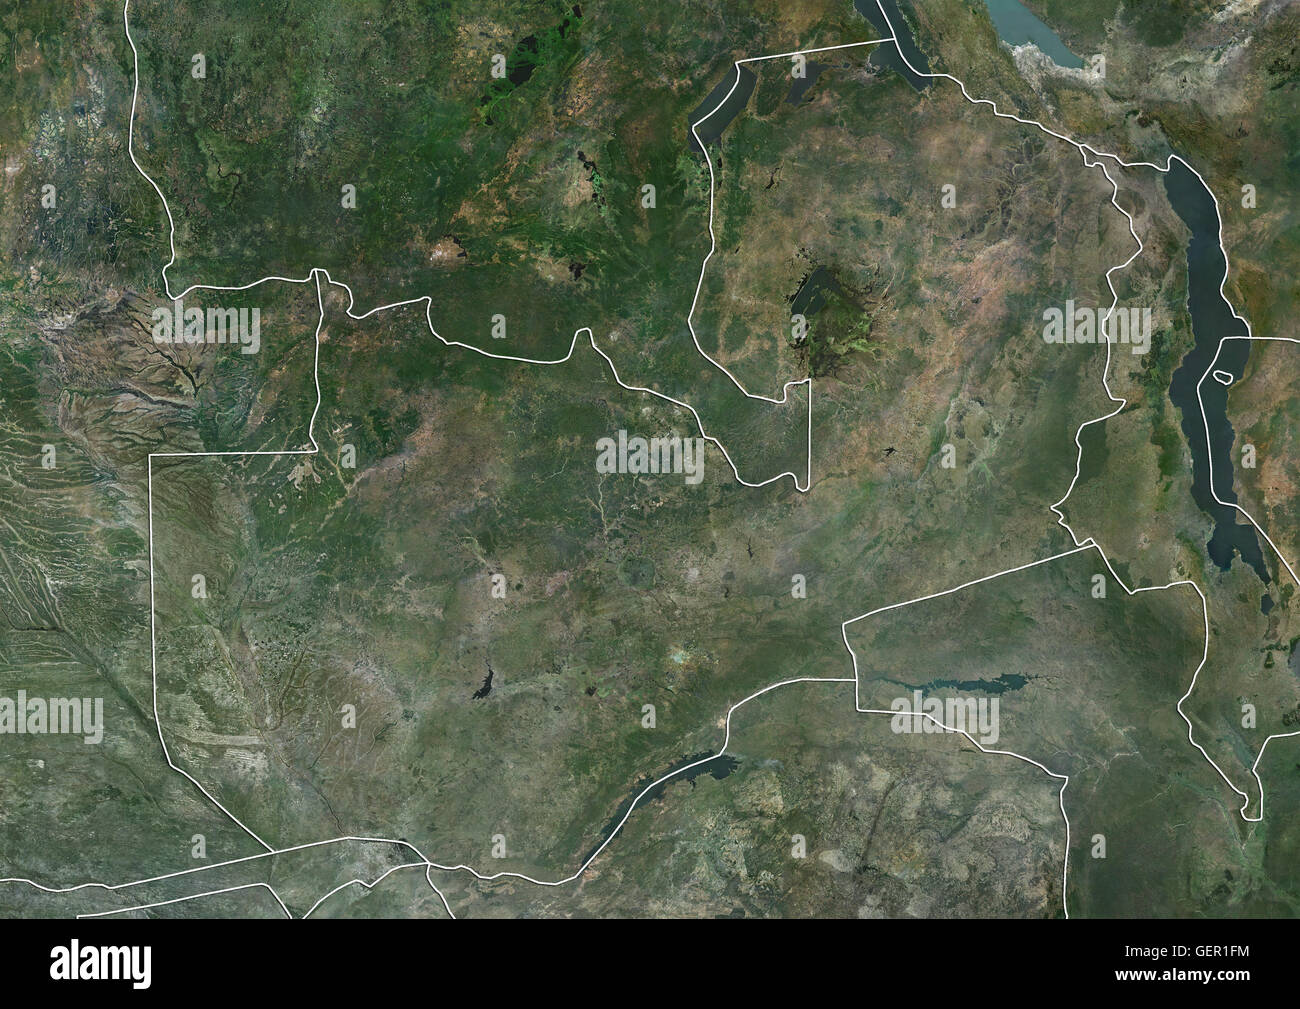 Satellitenansicht von Sambia (mit Ländergrenzen). Dieses Bild wurde aus Daten von Landsat-Satelliten erworben erstellt. Stockfoto